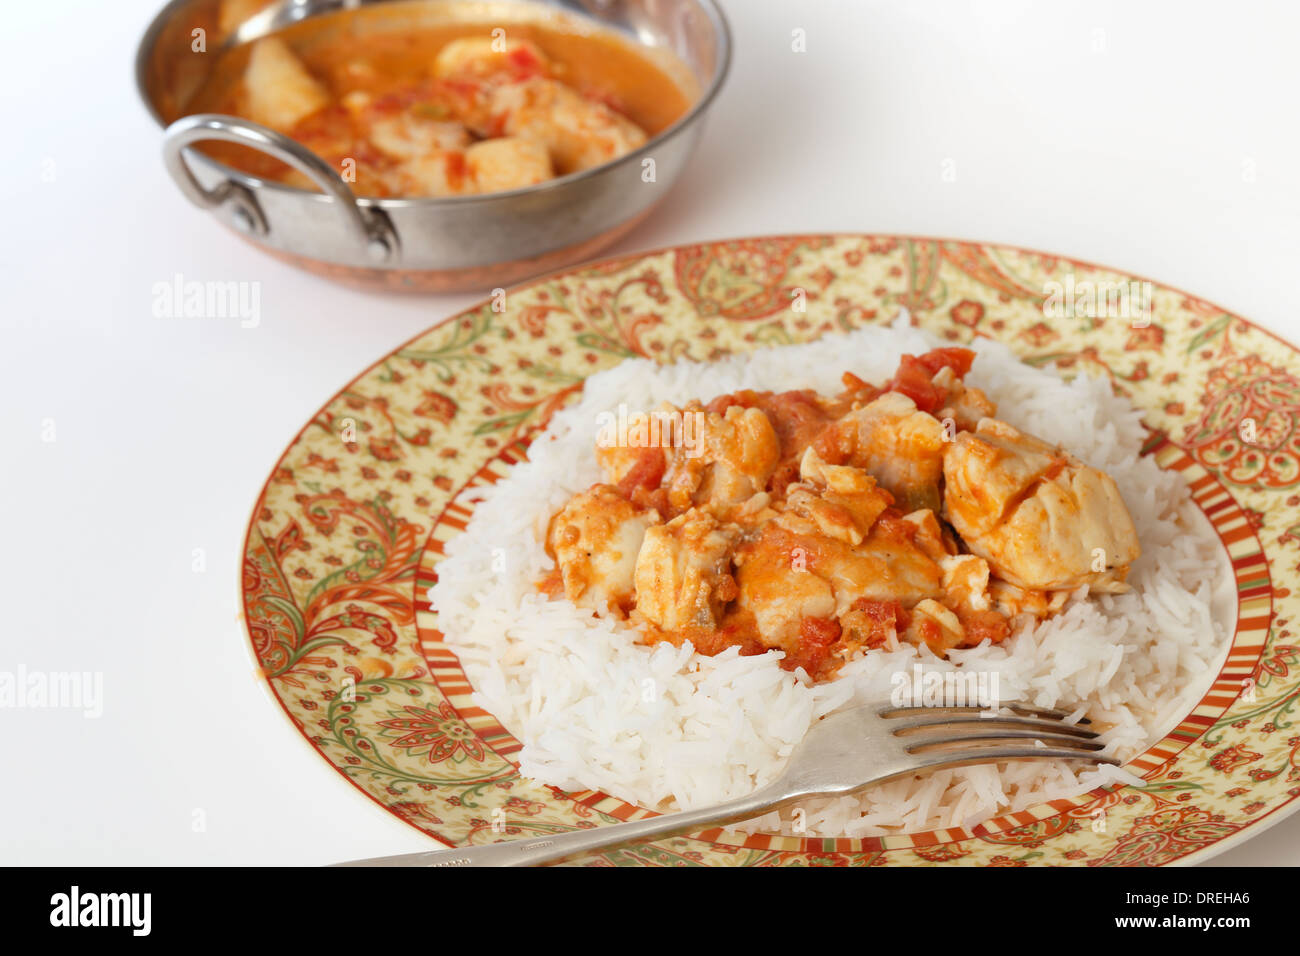 Curry de poisson de base, dans une sauce tomate et sauce au lait de coco, sur un lit de riz basmati, avec un kadai (karahi ou wok) plat de service Banque D'Images